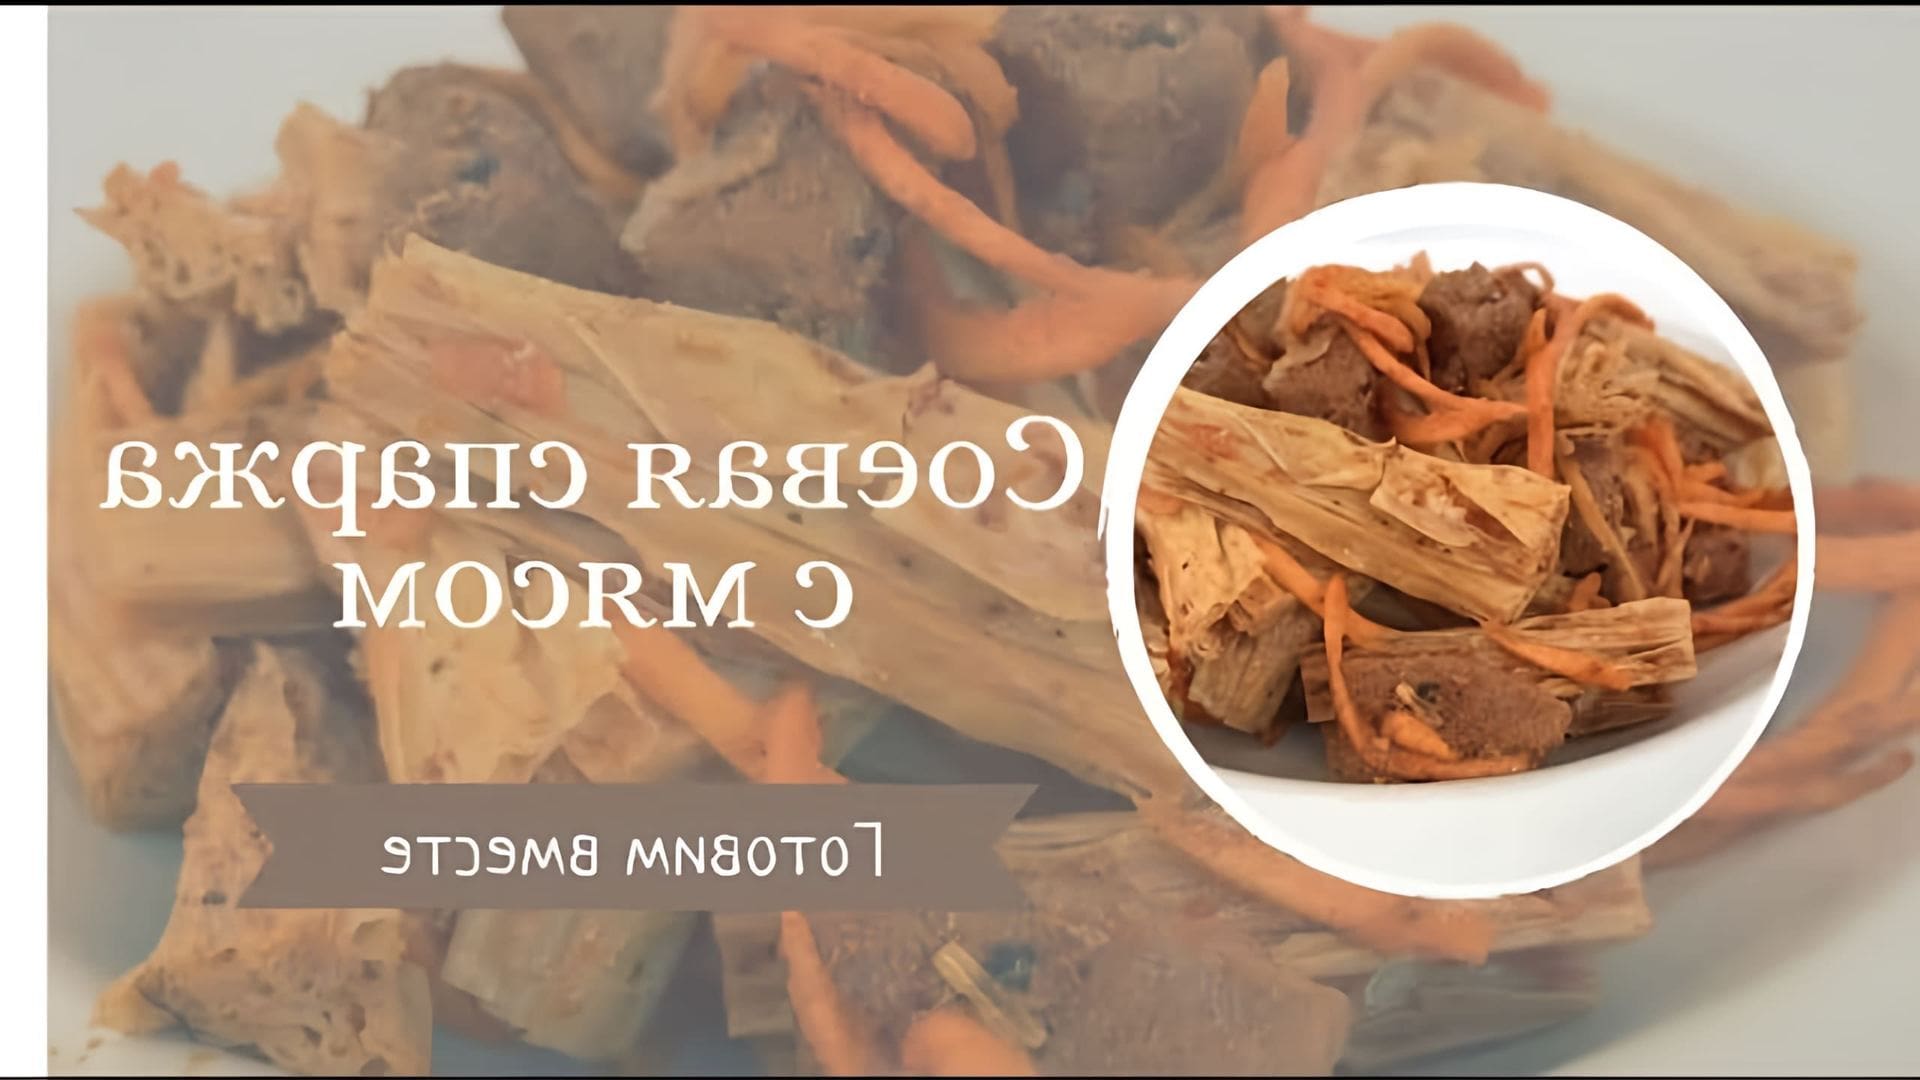 В этом видео демонстрируется рецепт приготовления тушеной спаржи с мясом и морковью